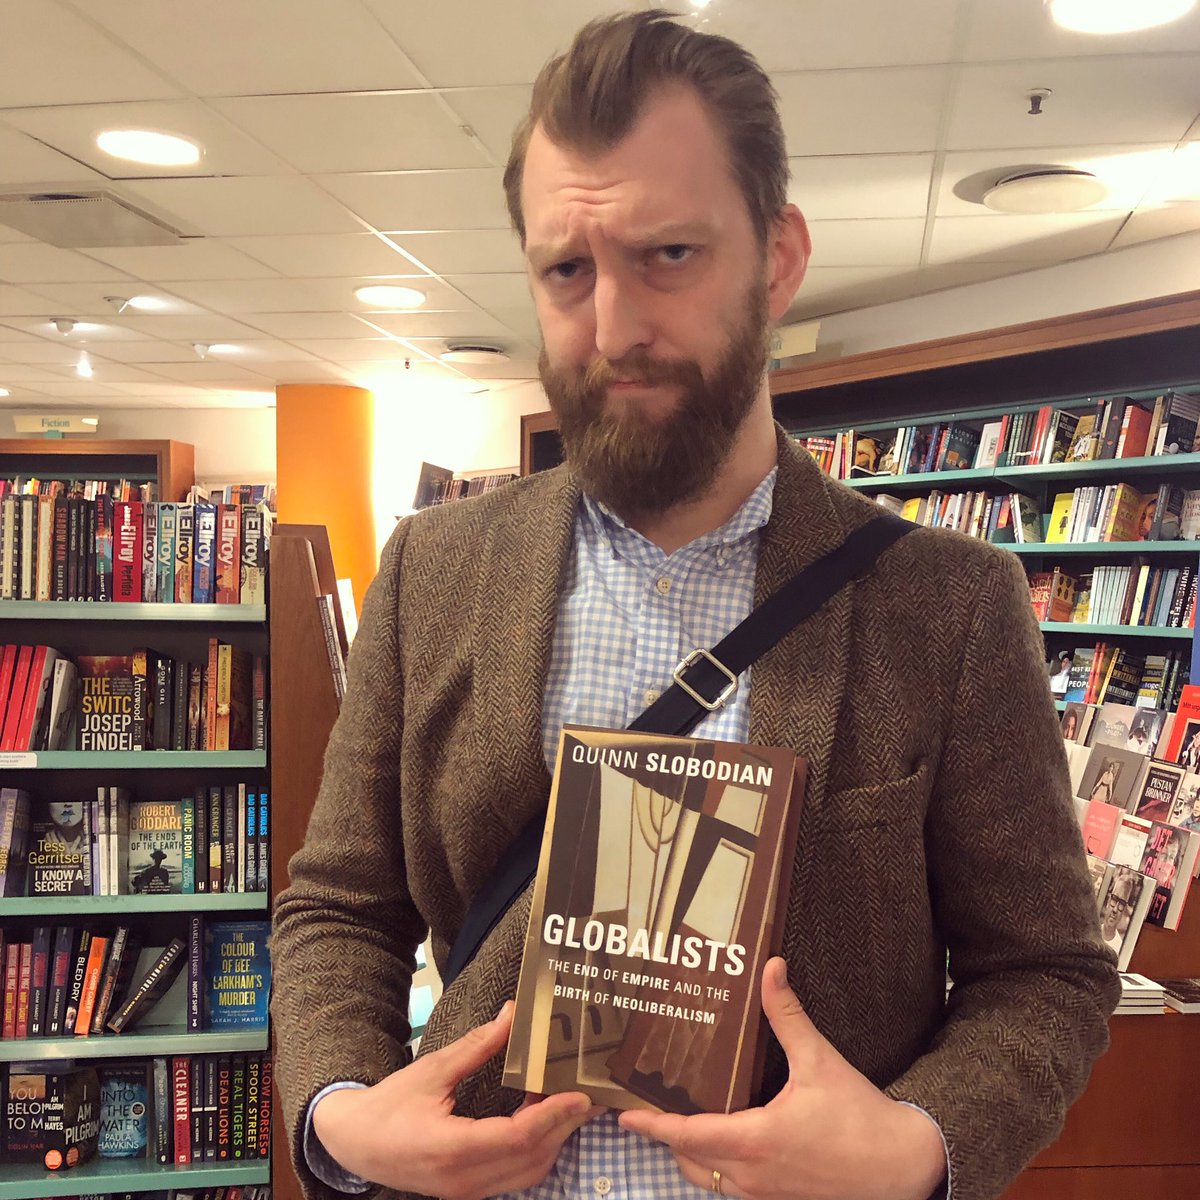 Ivar Arpi в Twitter: "Hittade mycket problematisk bok på en bokhandel i Stockholm. Mycket problematisk. Oanständig.… "